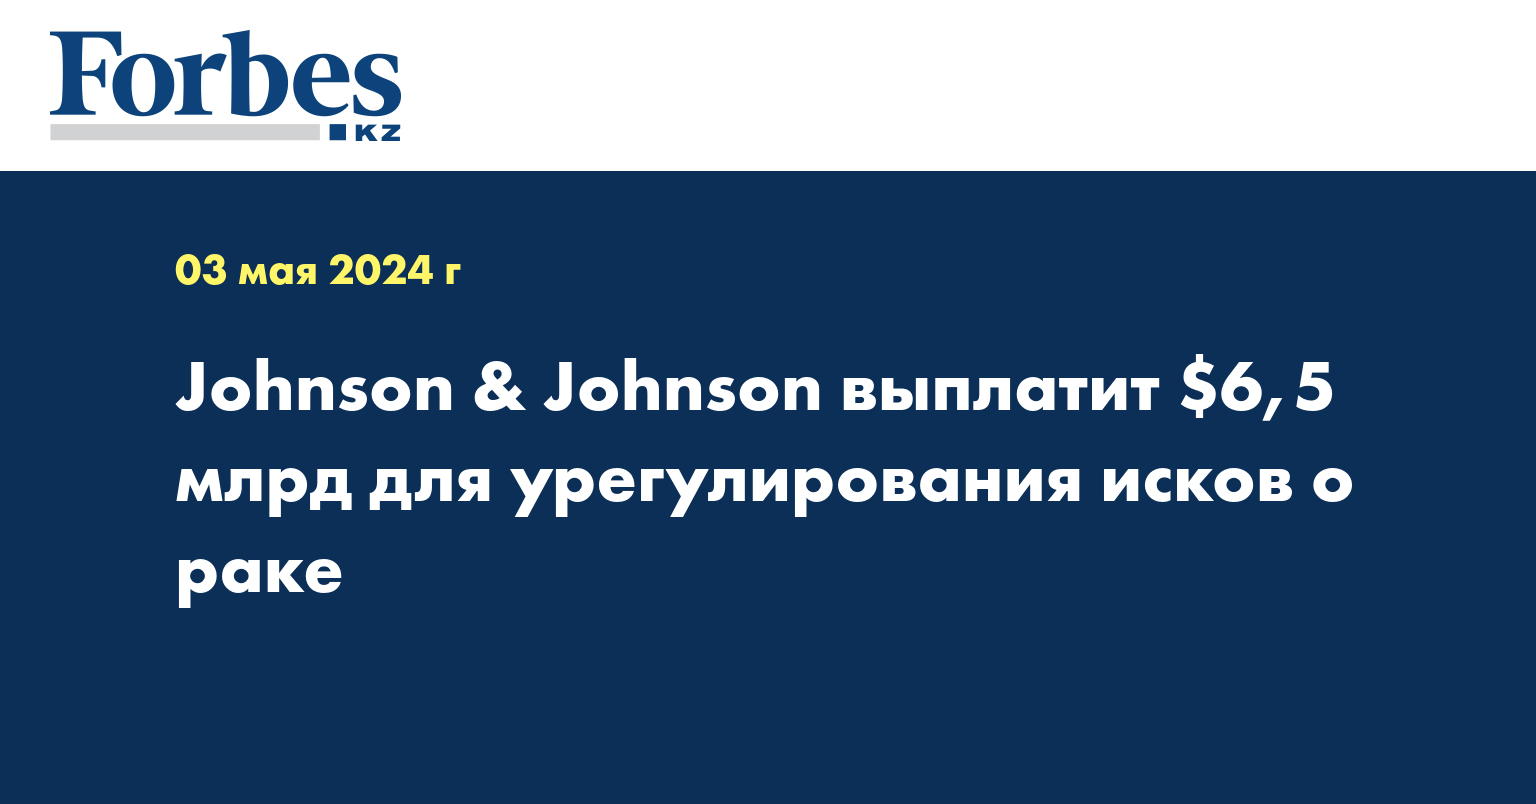 Johnson & Johnson выплатит $6,5 млрд для урегулирования исков о раке